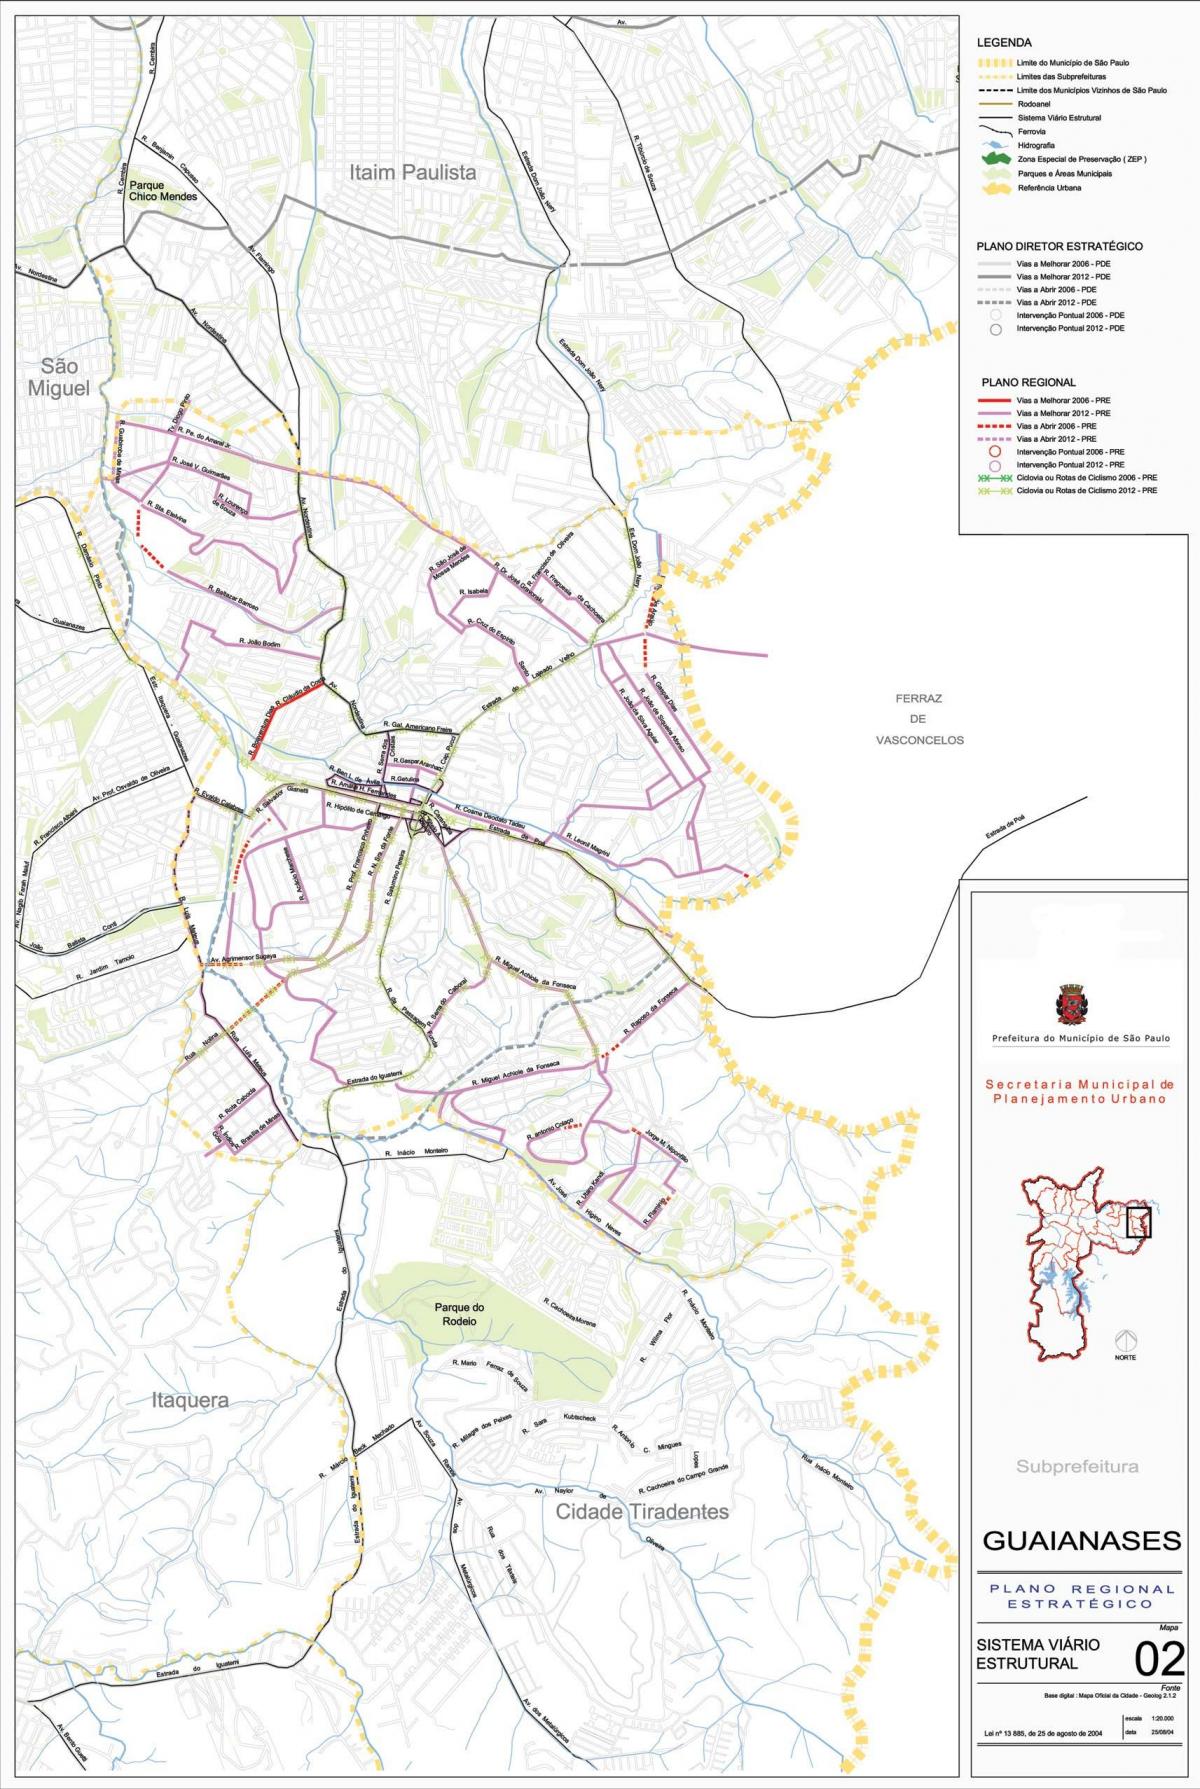 Peta Guaianases São Paulo - Jalan